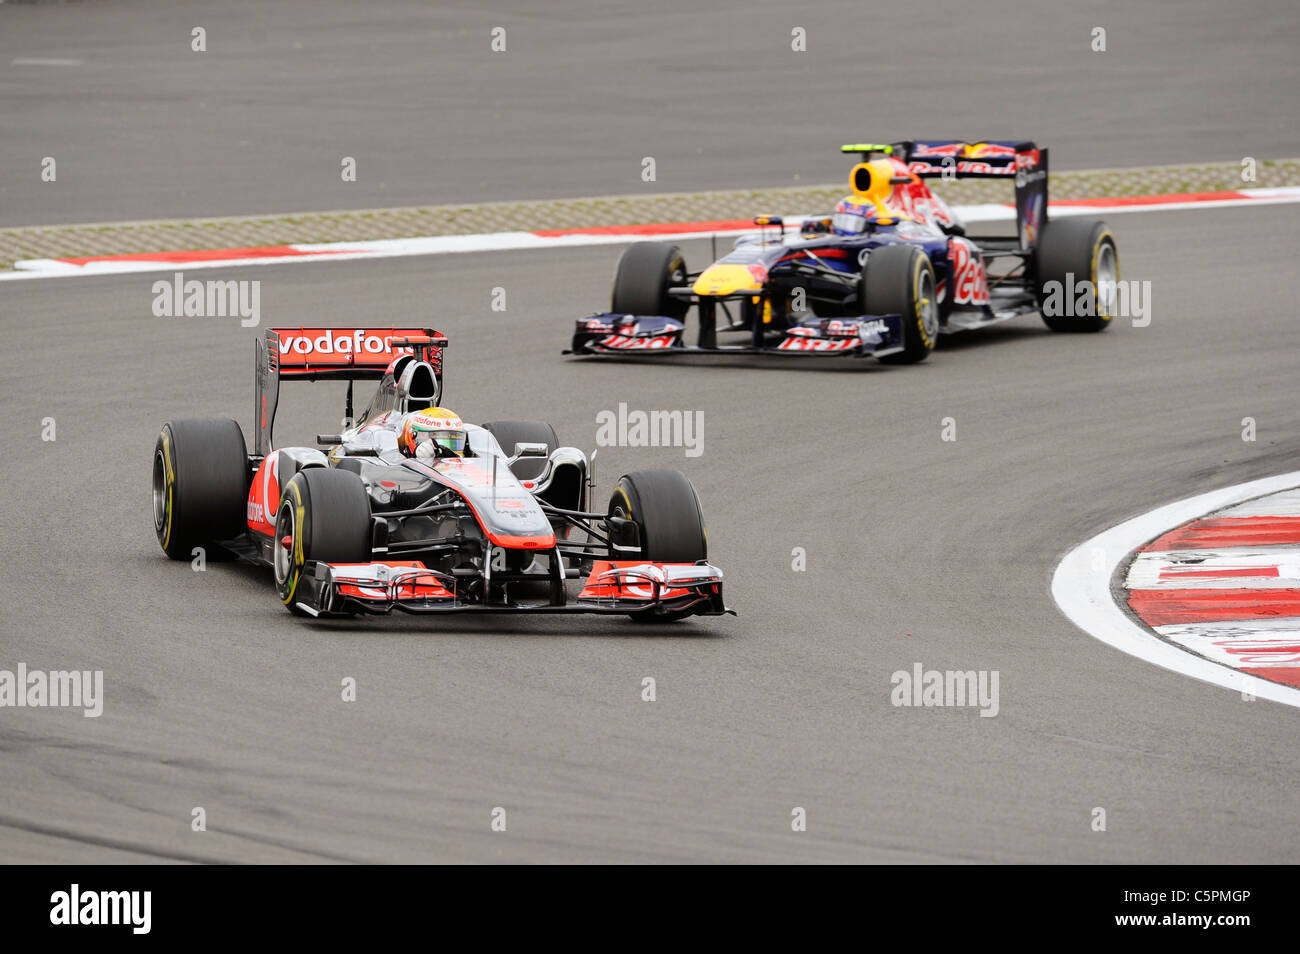 Lewis Hamilton devant Mark Webber lors de la German Grand Prix de Formule 1 2011 Banque D'Images